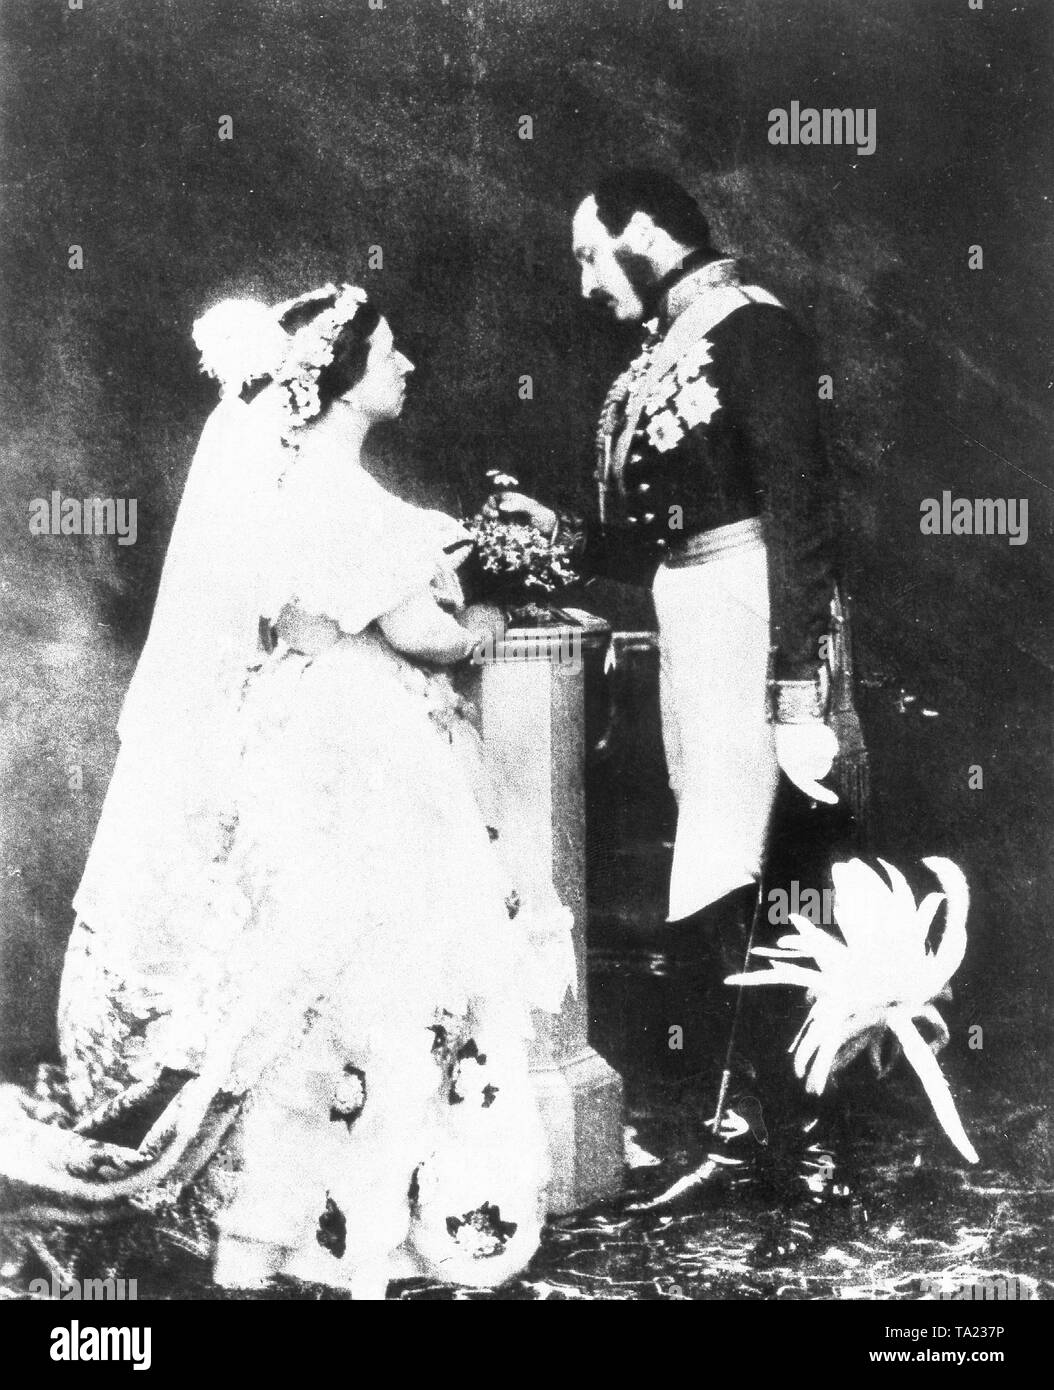 La reina Victoria y el Príncipe Alberto en una recreación de su ceremonia de matrimonio fotografiada por Roger Fenton, 1854 Foto de stock